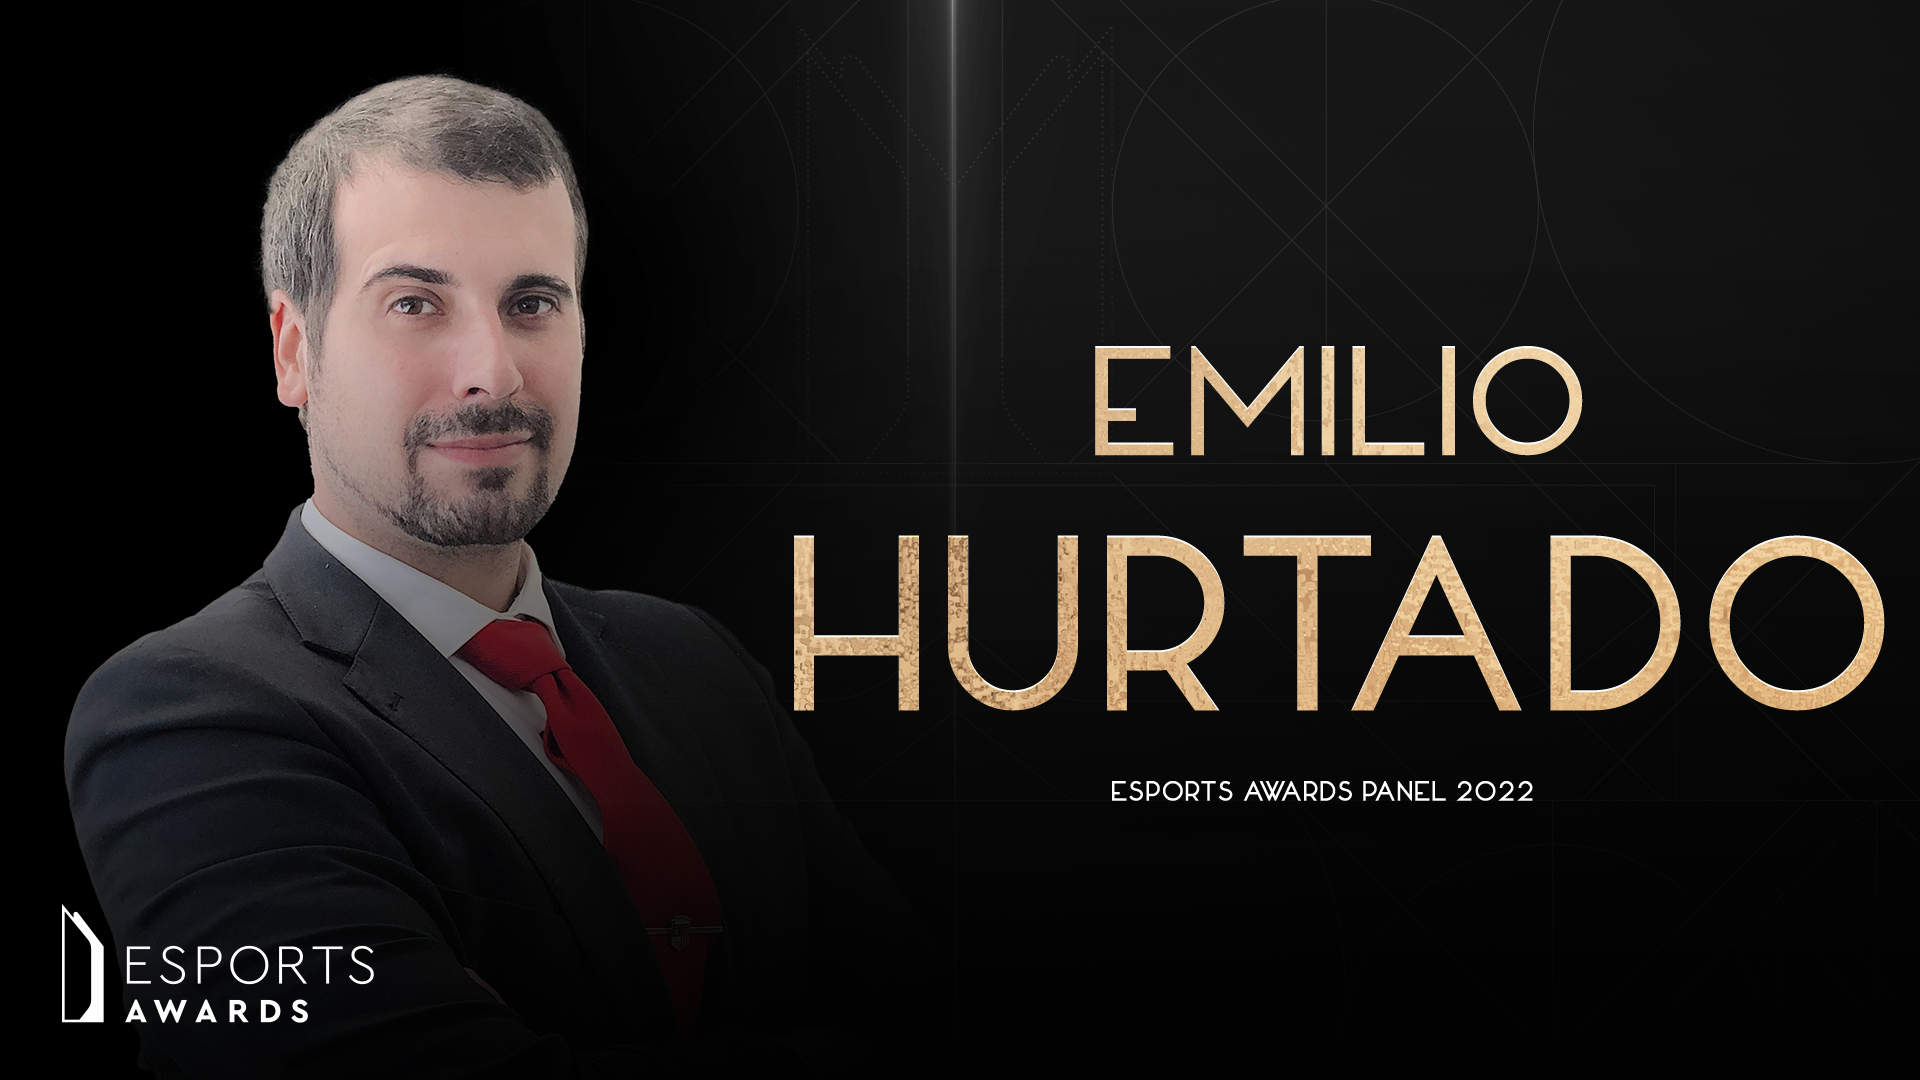 Emilio Hurtado, director de Esports & Gaming en Auren, nombrado jurado de los Esports Awards